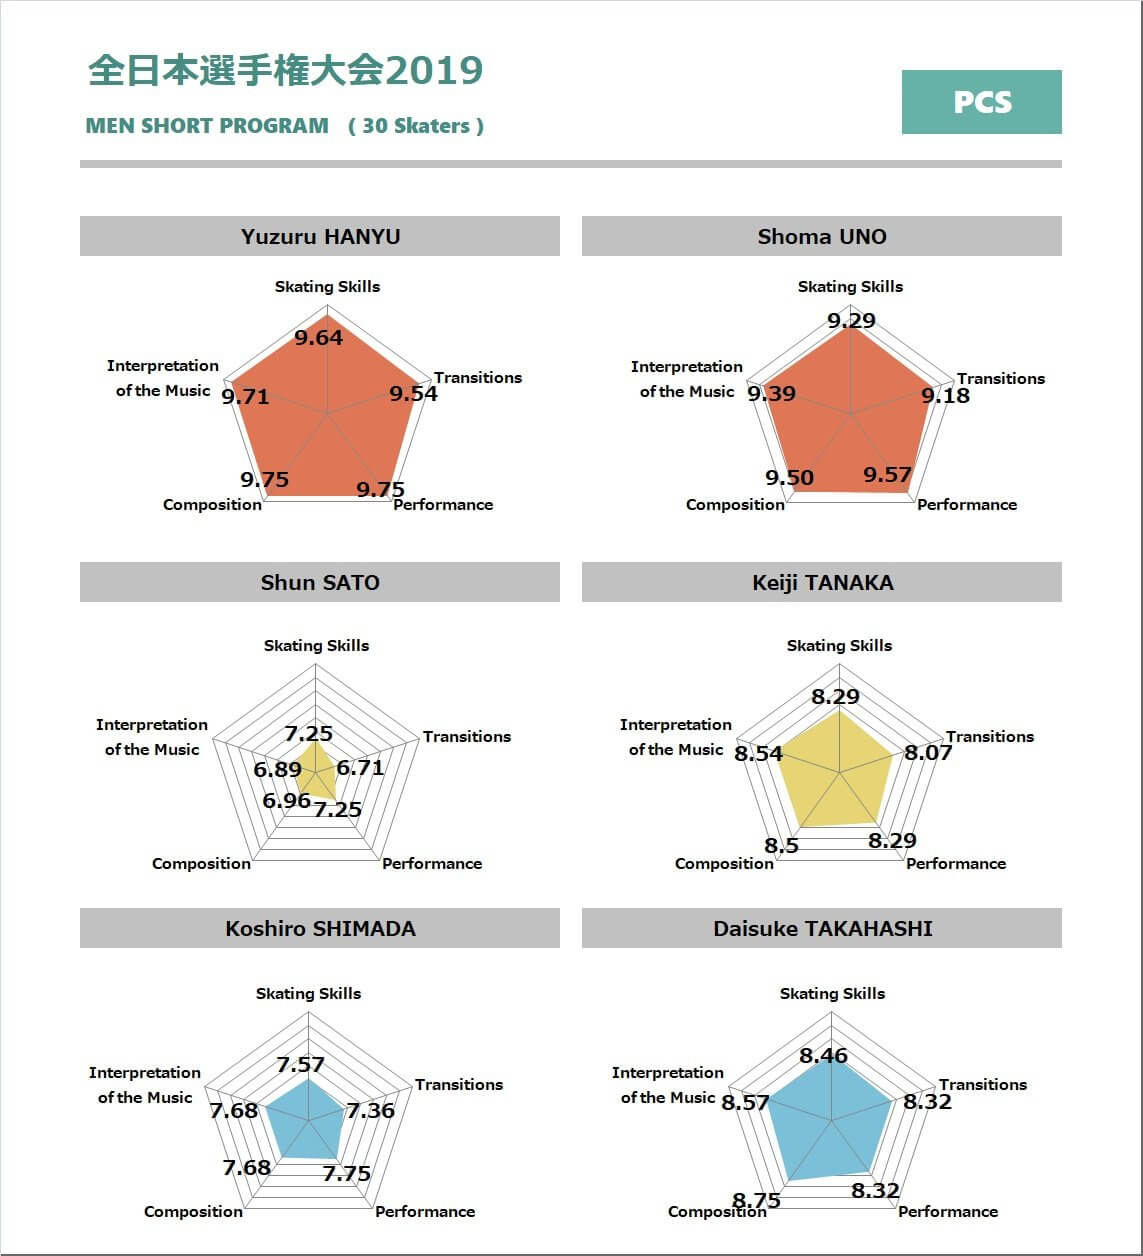 全日本フィギアスケート選手権2019 男子シングル、主な選手 ショートプログラム データ分析結果のまとめ。